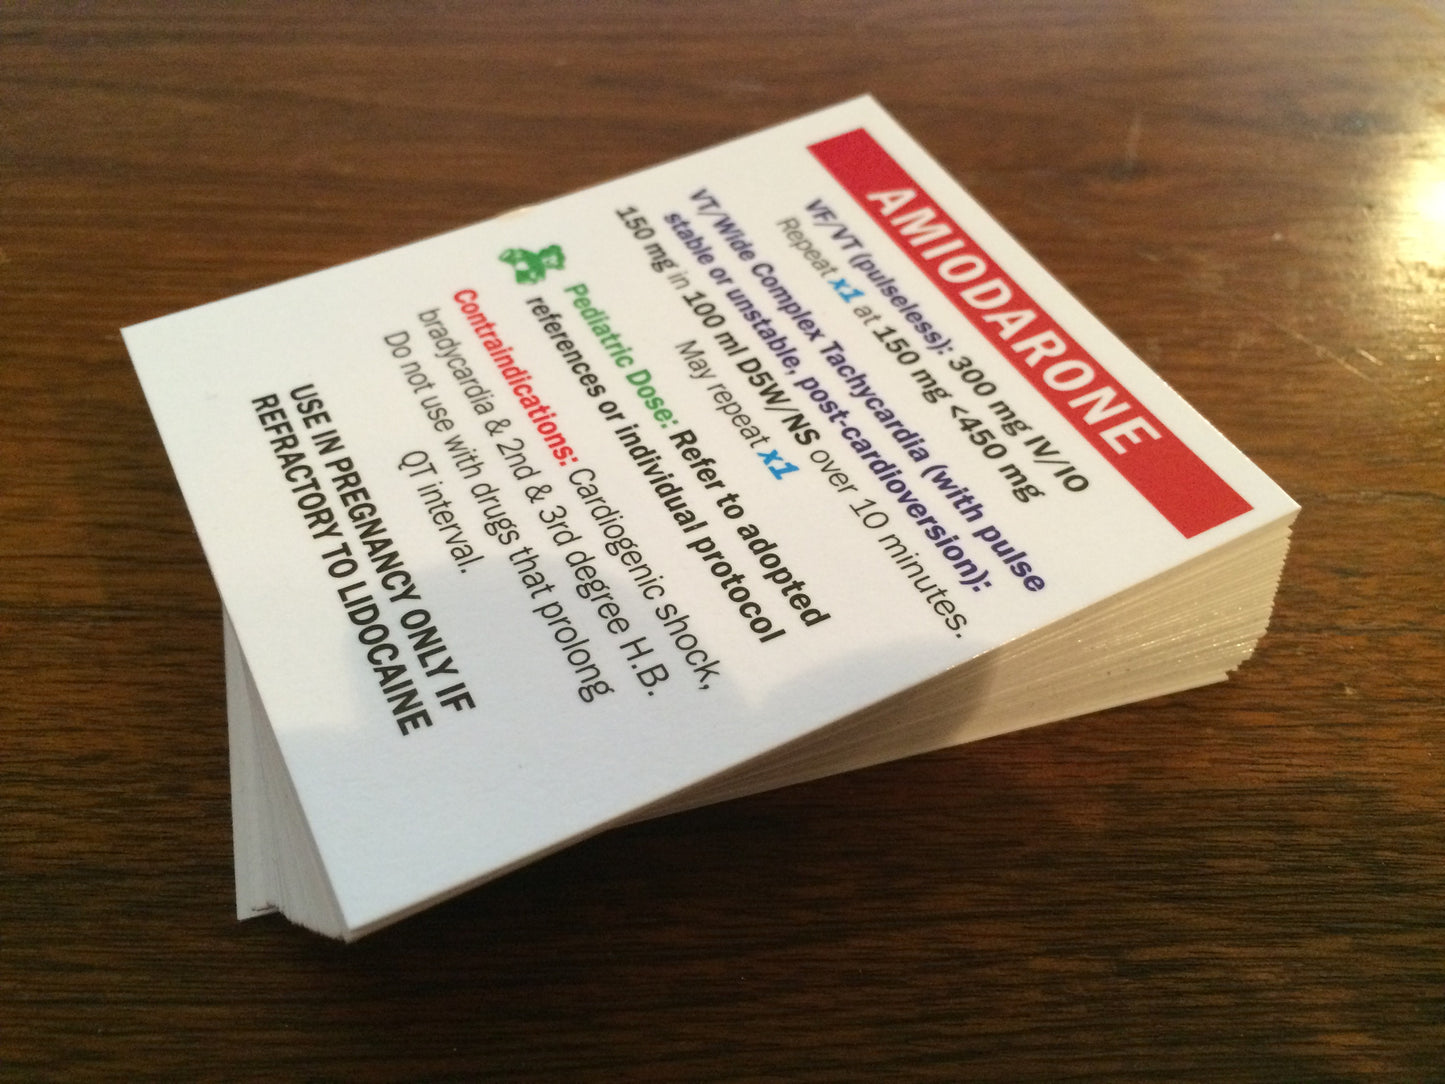 Set of 38 Drug Box Medication Reference Cards